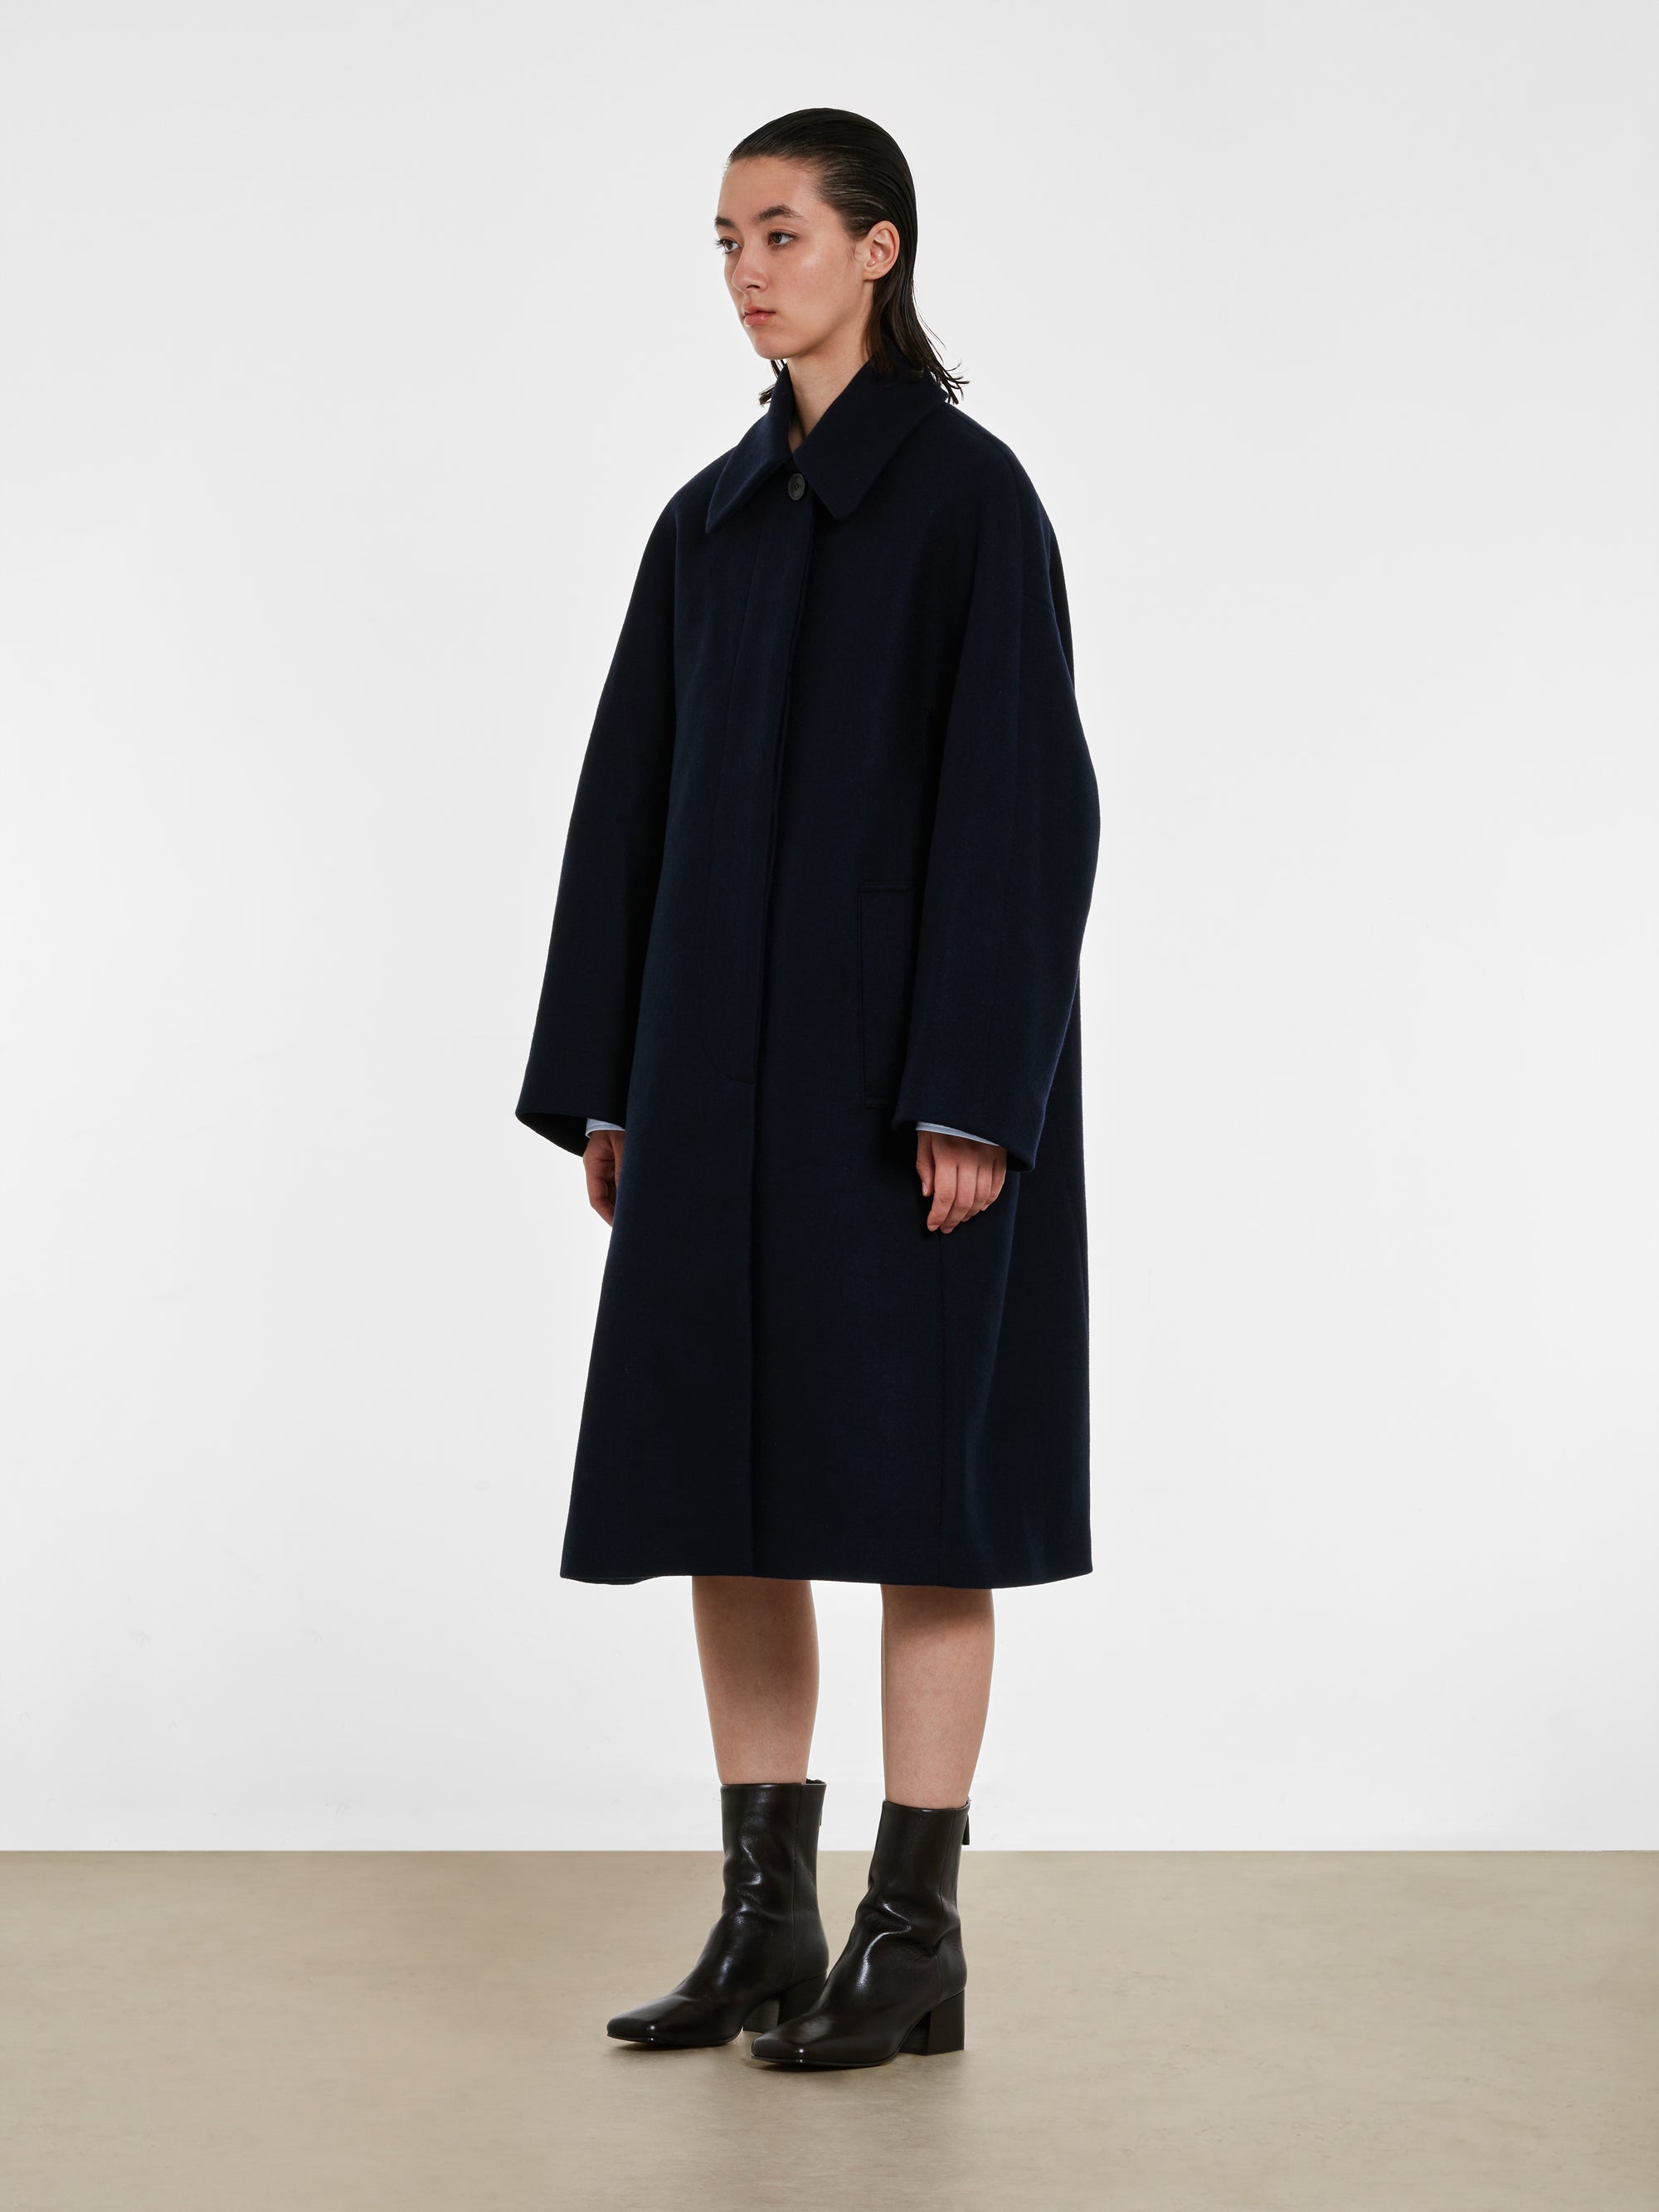 Dries Van Noten - Women’s Wool Coat - (Navy) view 2